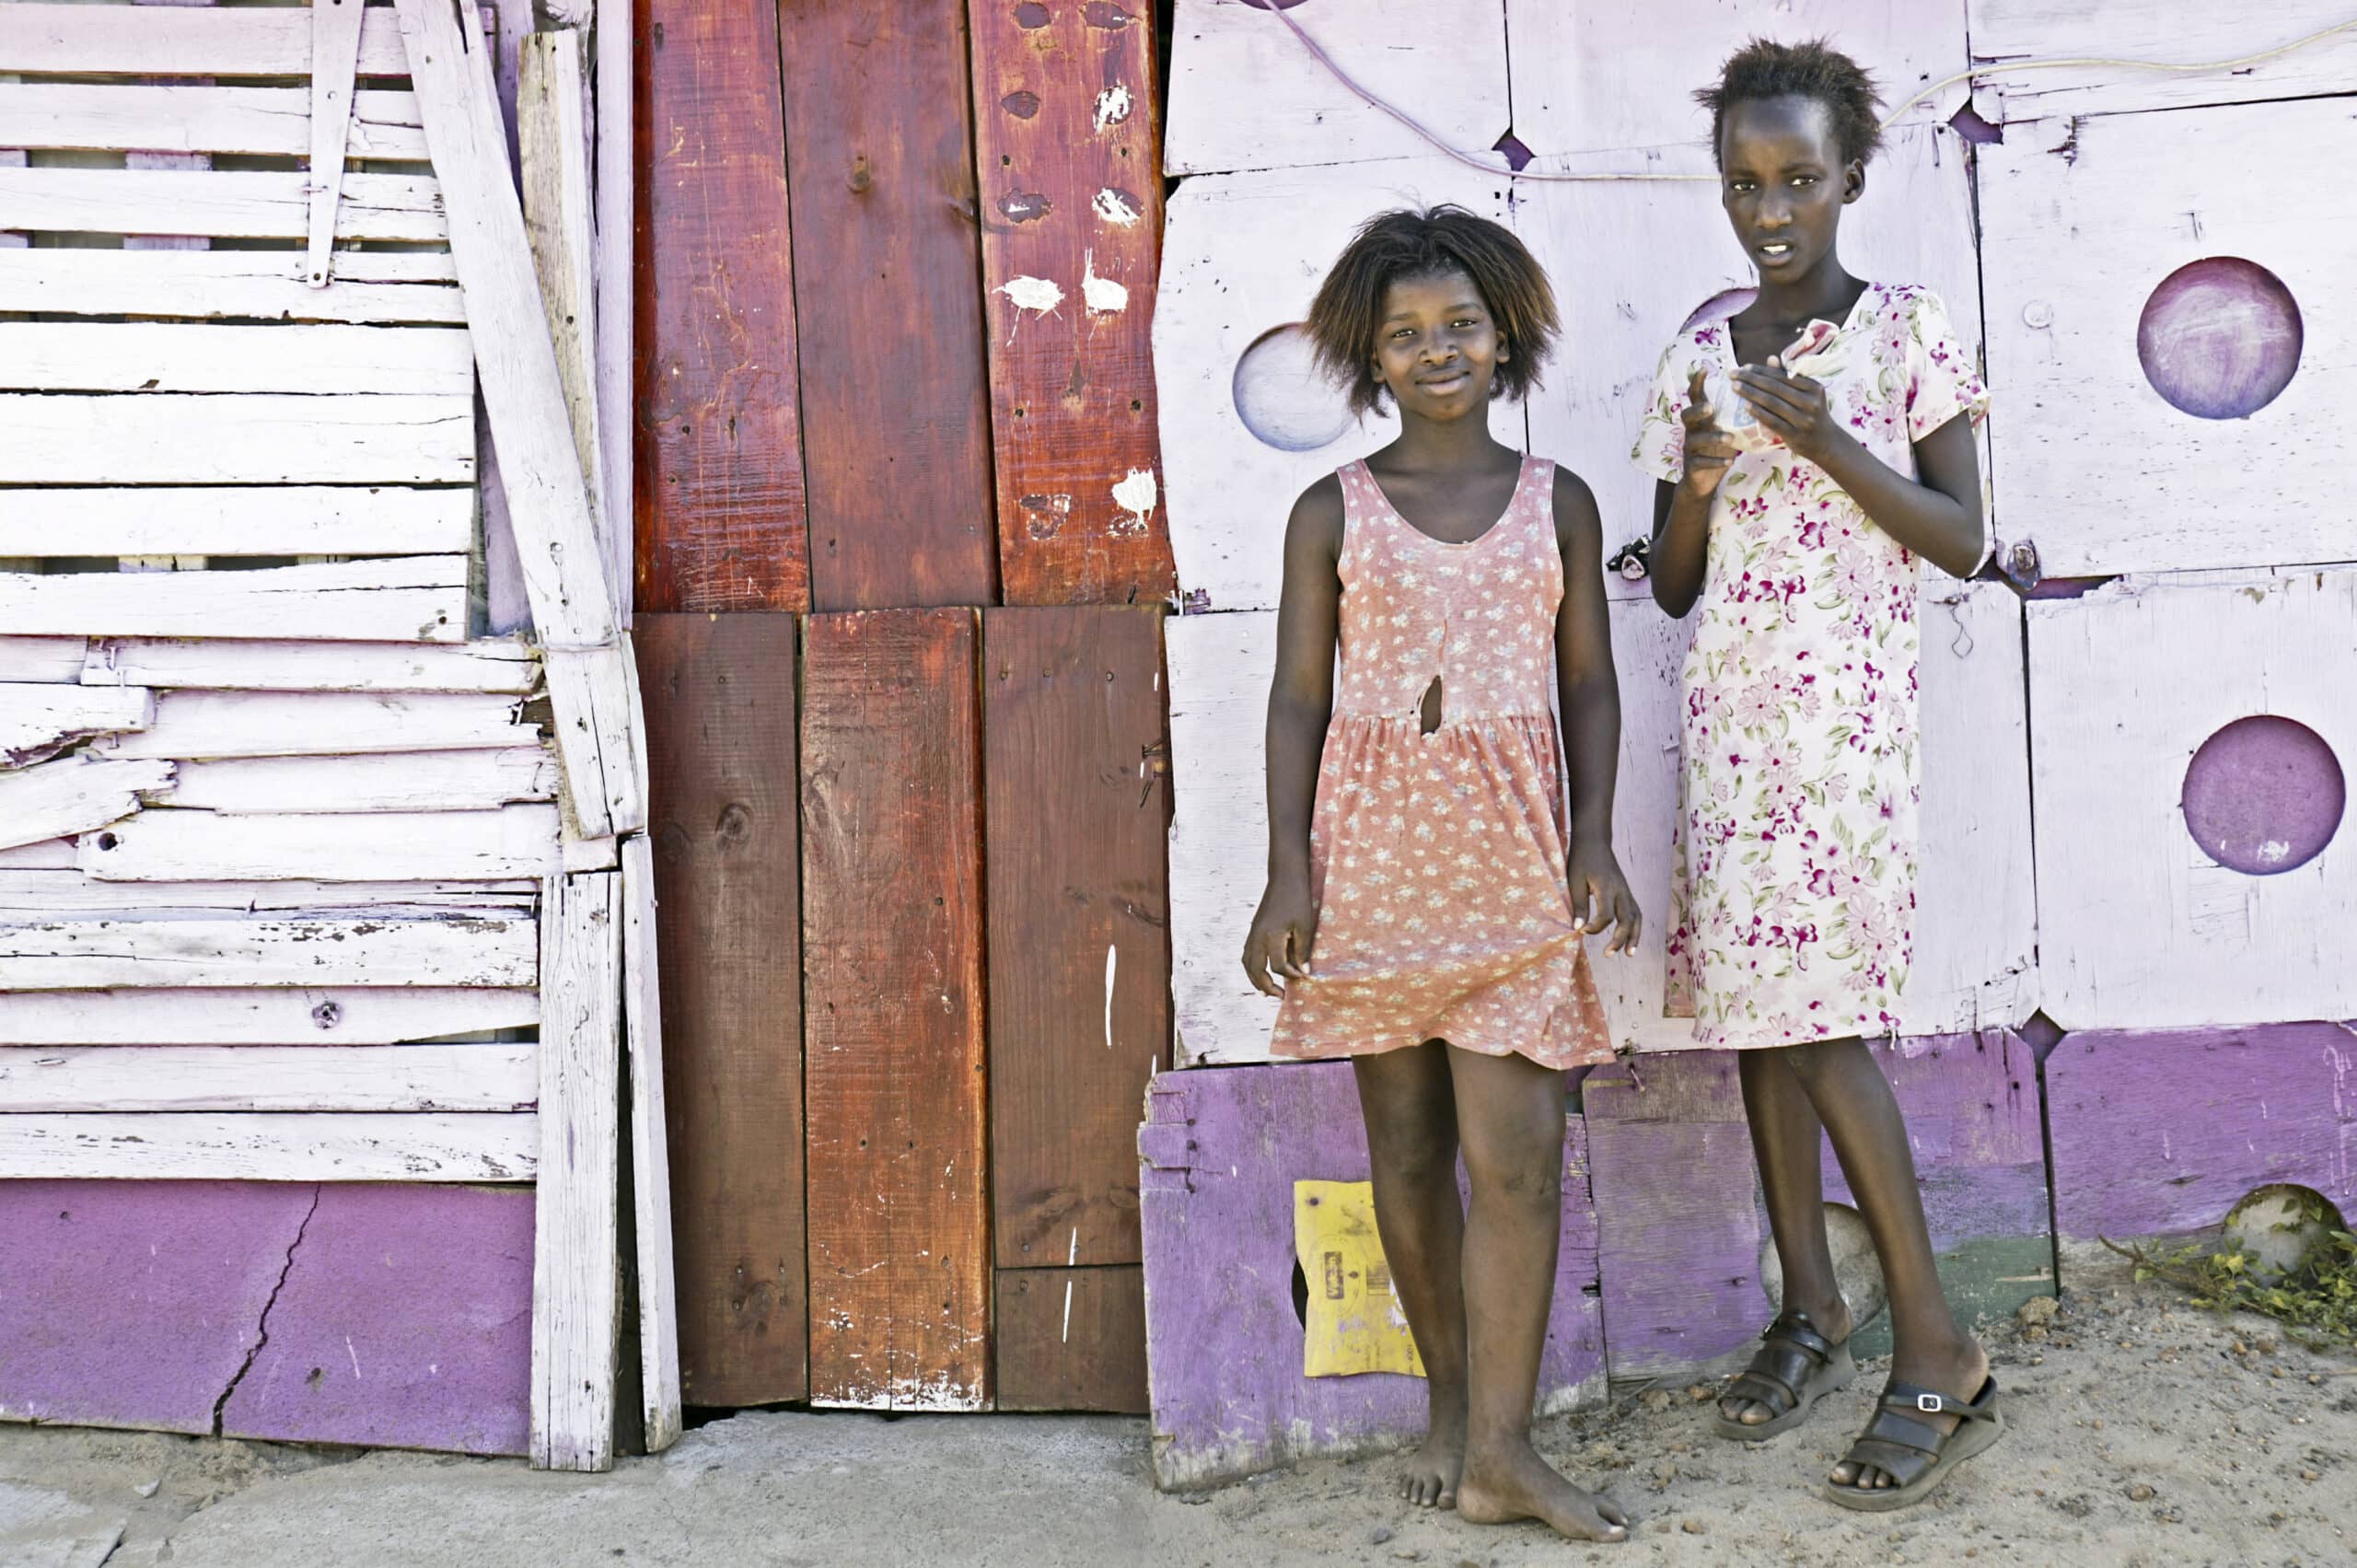 Zwei junge Mädchen stehen vor einem rustikalen Holzhaus mit lila und weißen Paneelen. Eines hält ein Buch, das andere eine Plastikflasche, beide barfuß auf sandigem Boden. © Fotografie Tomas Rodriguez